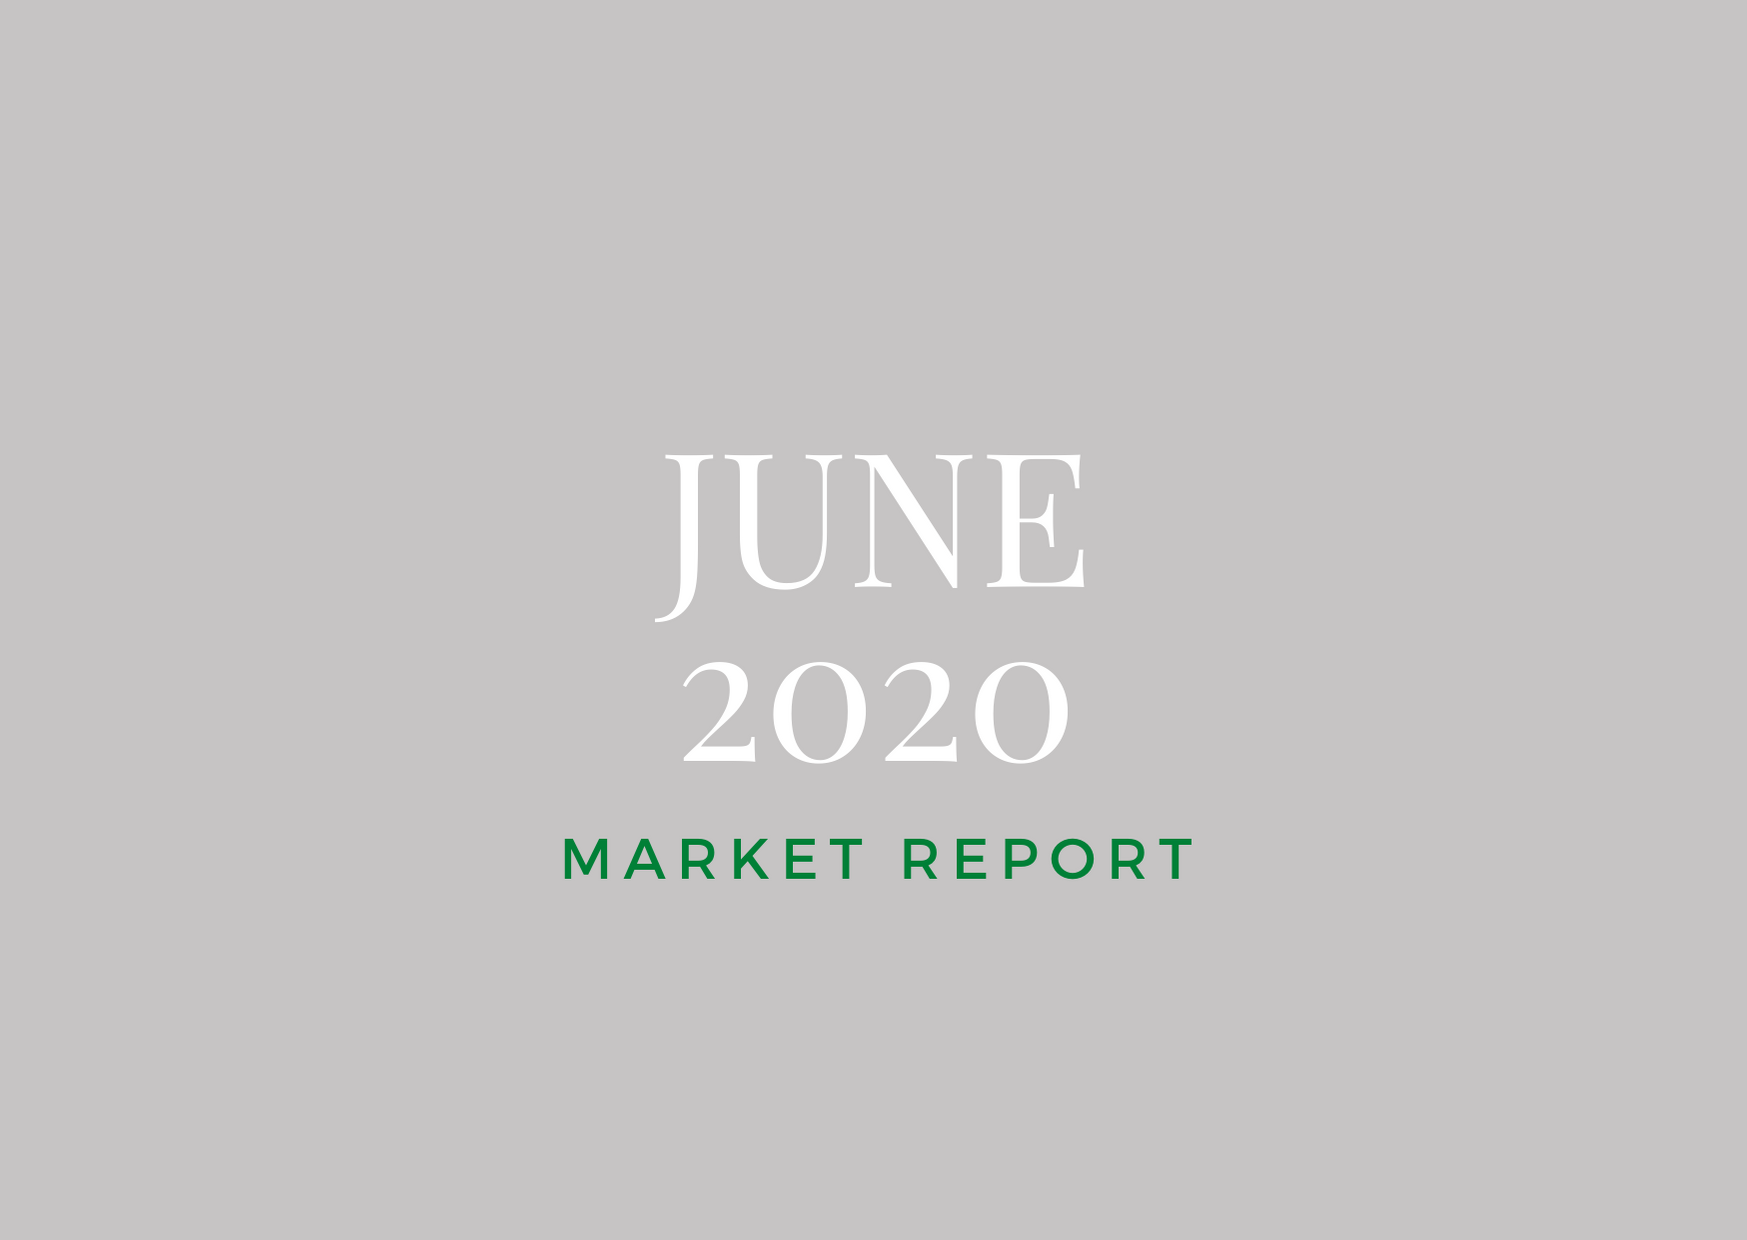 June 2020 Market Report